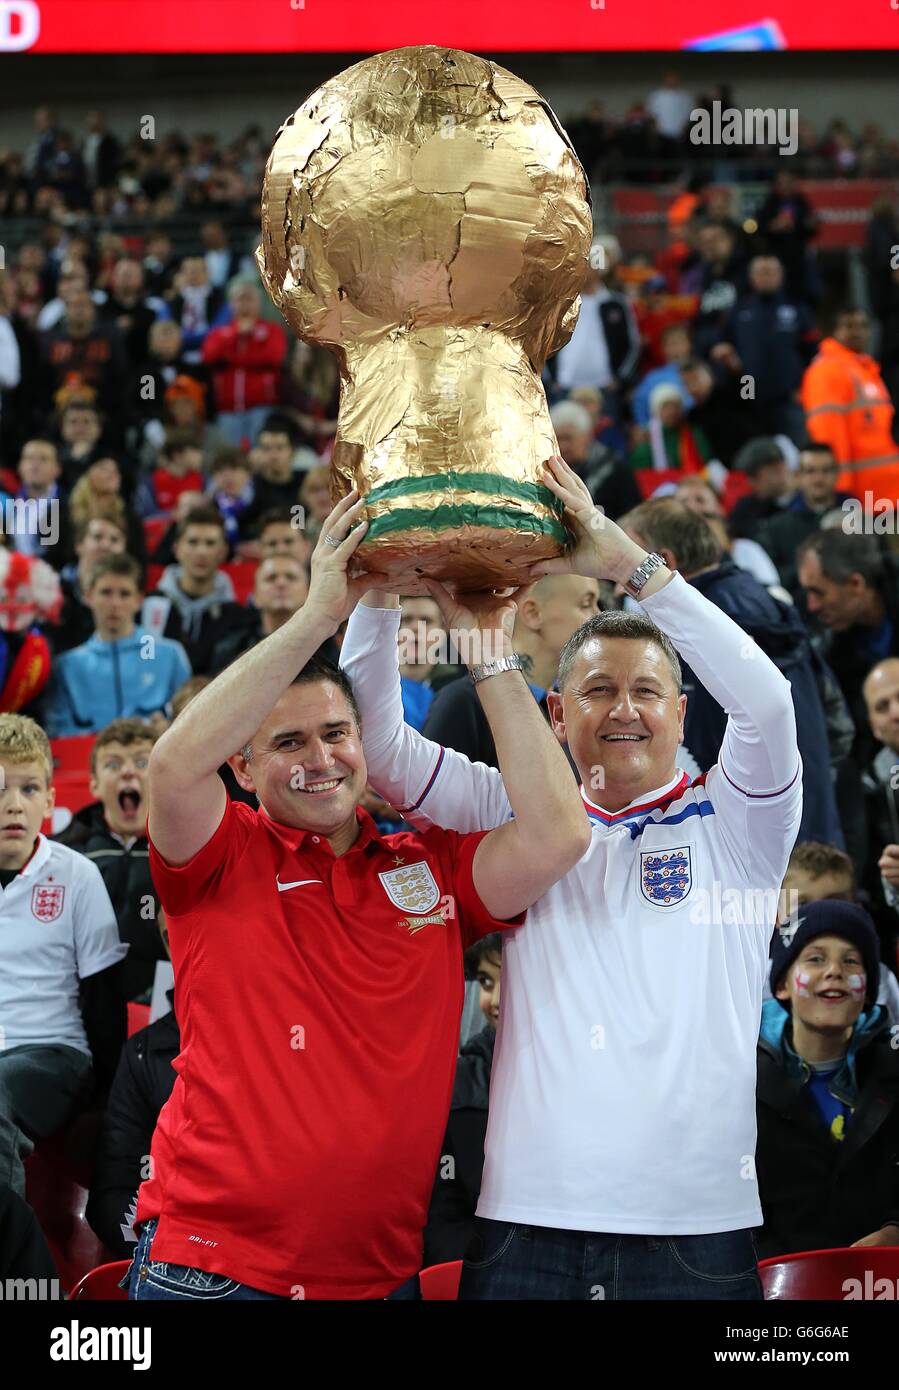 Fútbol - Copa Mundial de la FIFA - Grupo H - Inglaterra contra Montenegro - Estadio Wembley. Los fans de Inglaterra sostienen un trofeo casero de la copa del mundo en los stands Foto de stock